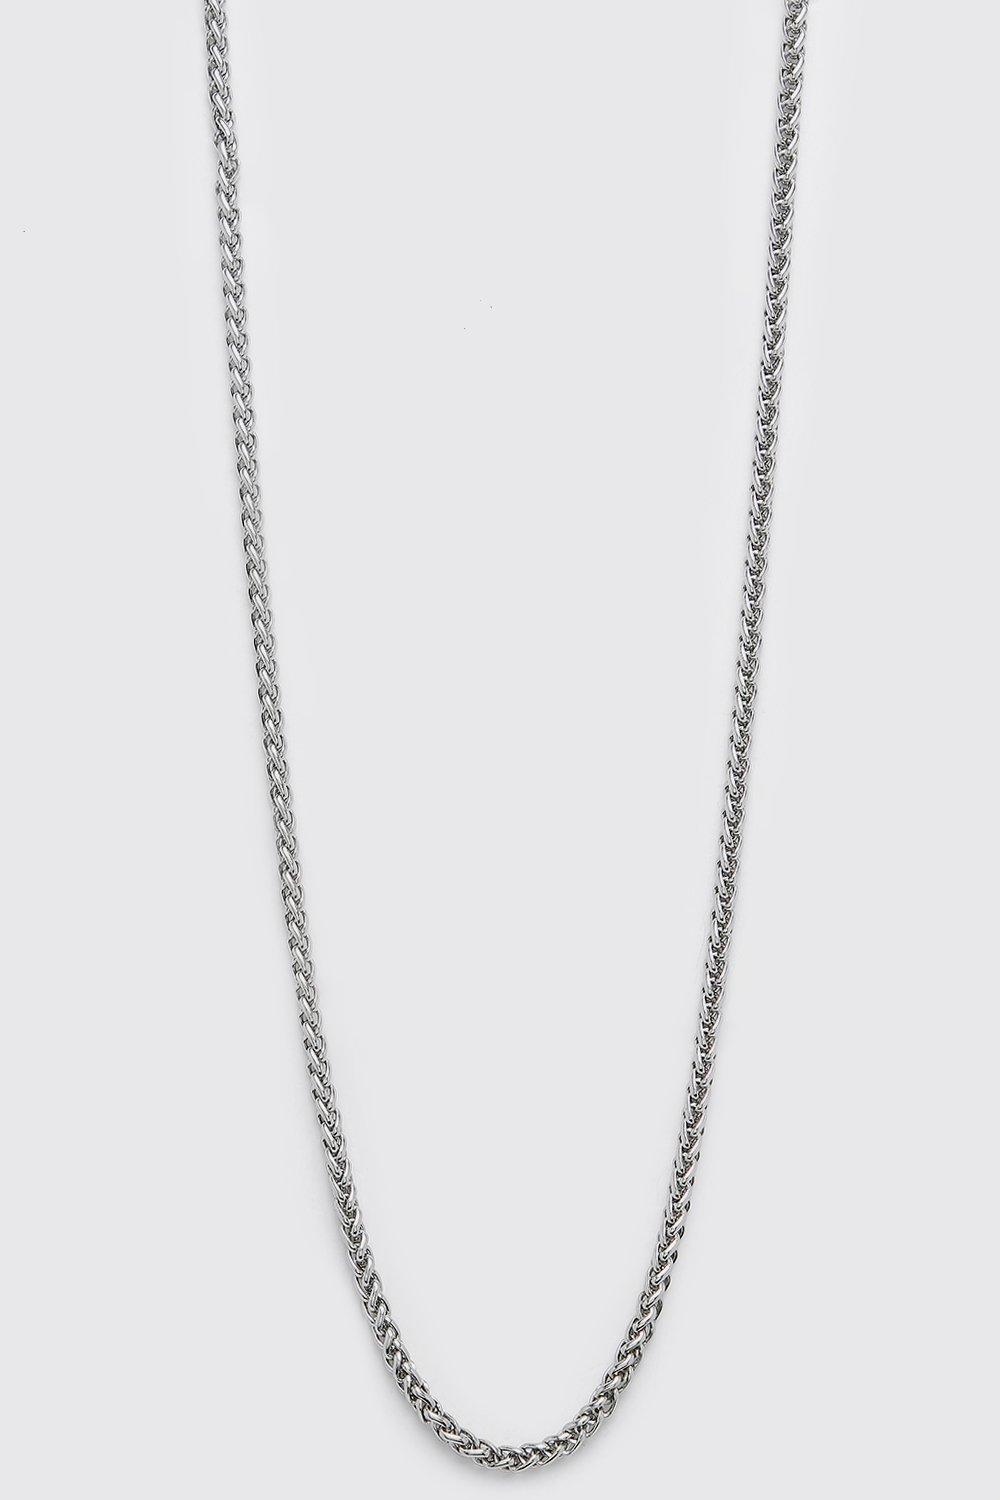 collier en chaîne argentée homme - one size, argent